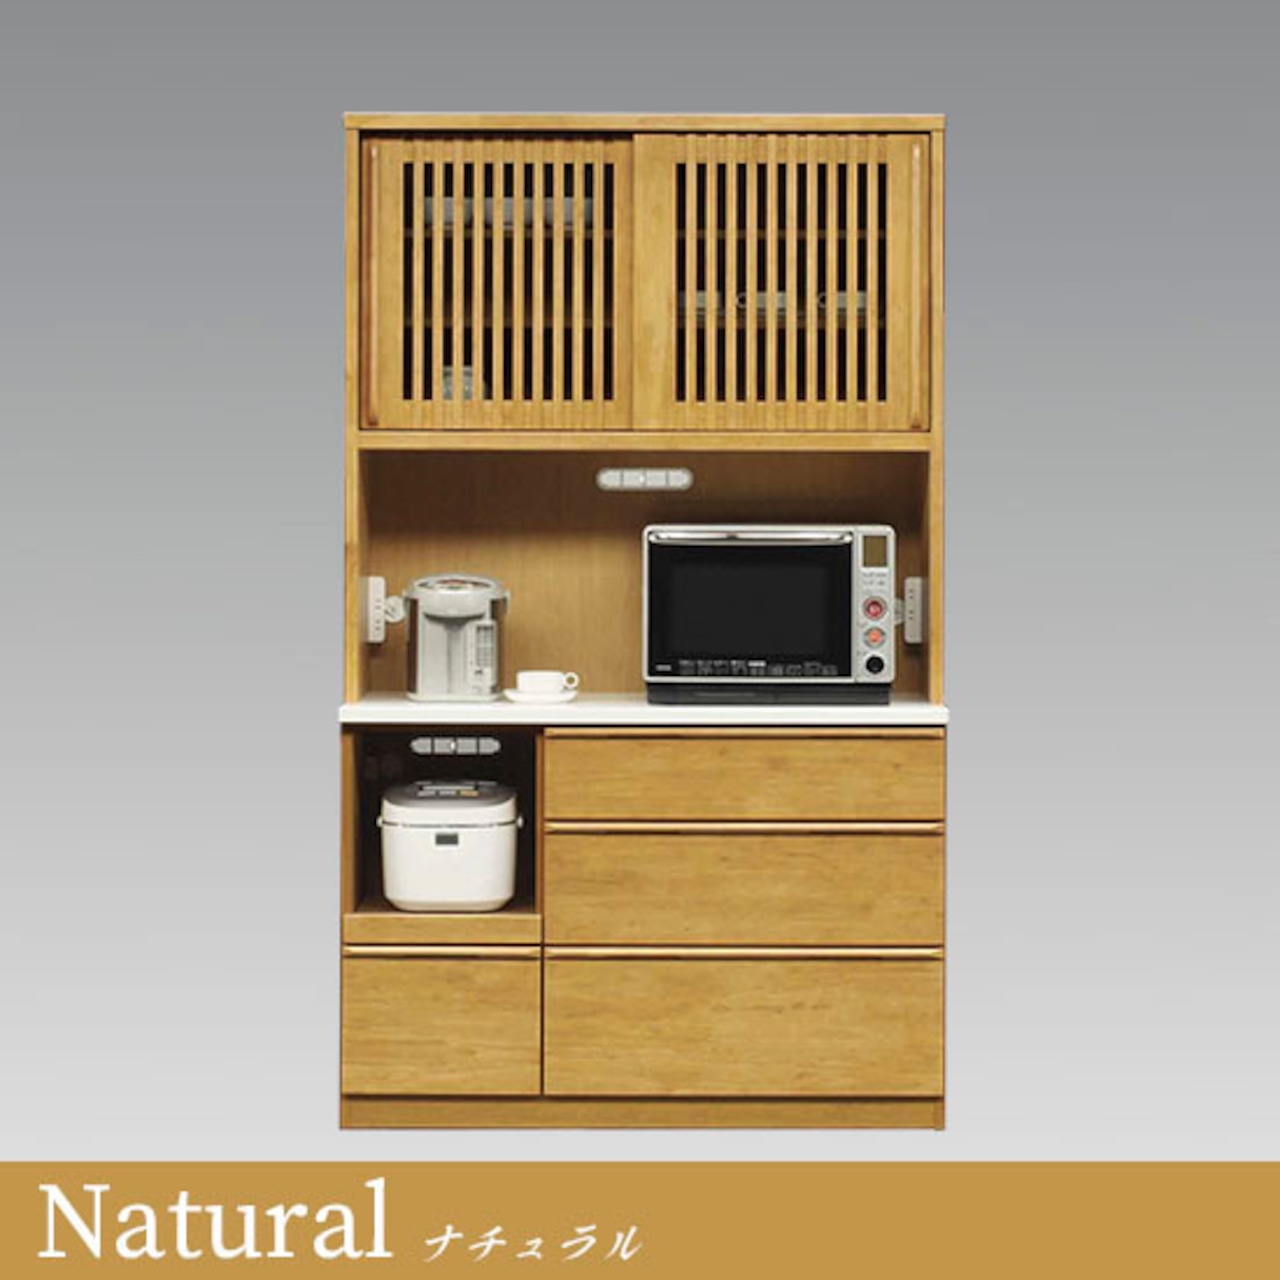 【幅120】キッチンボード 食器棚  レンジ台 収納 炊飯器収納 (全2色)